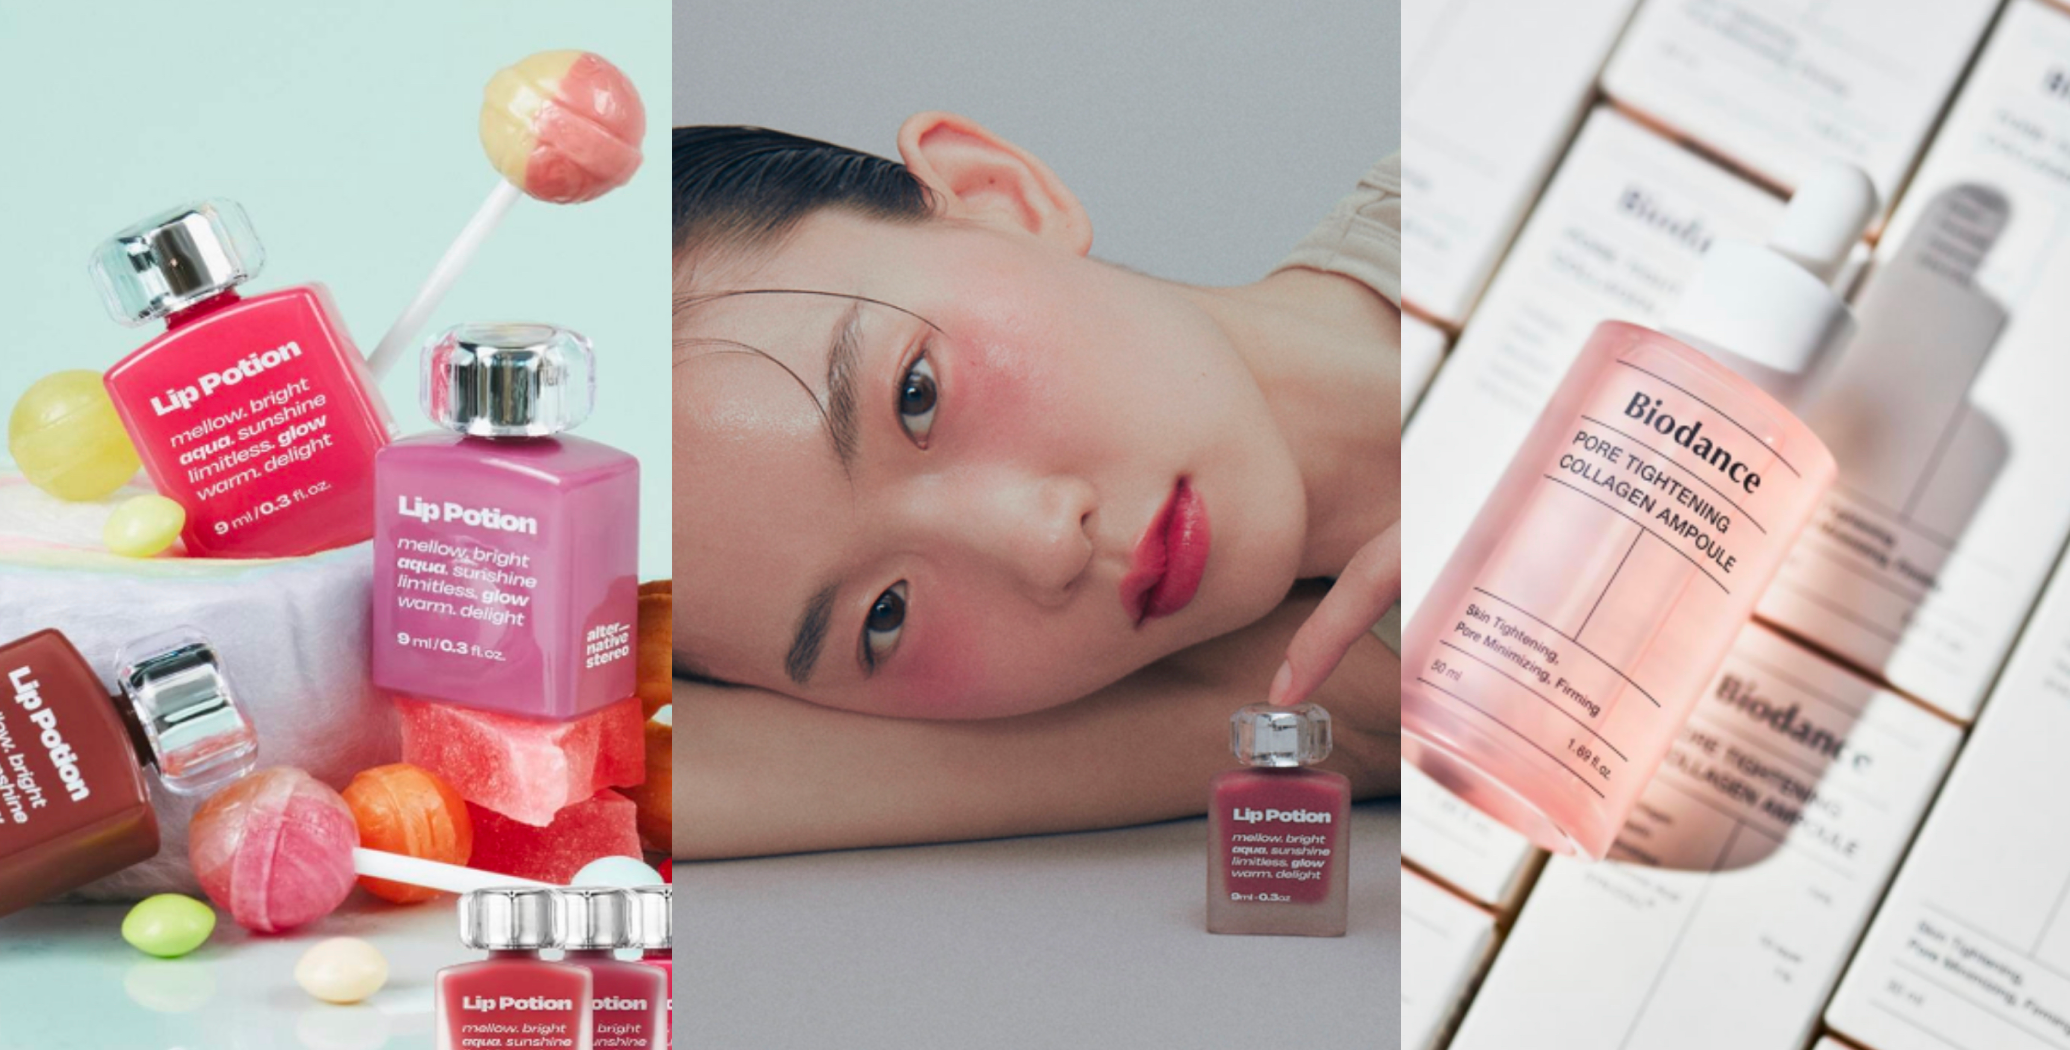 Мультибрендовый магазин корейской косметики Hey! Babes Cosmetics представит две новые марки